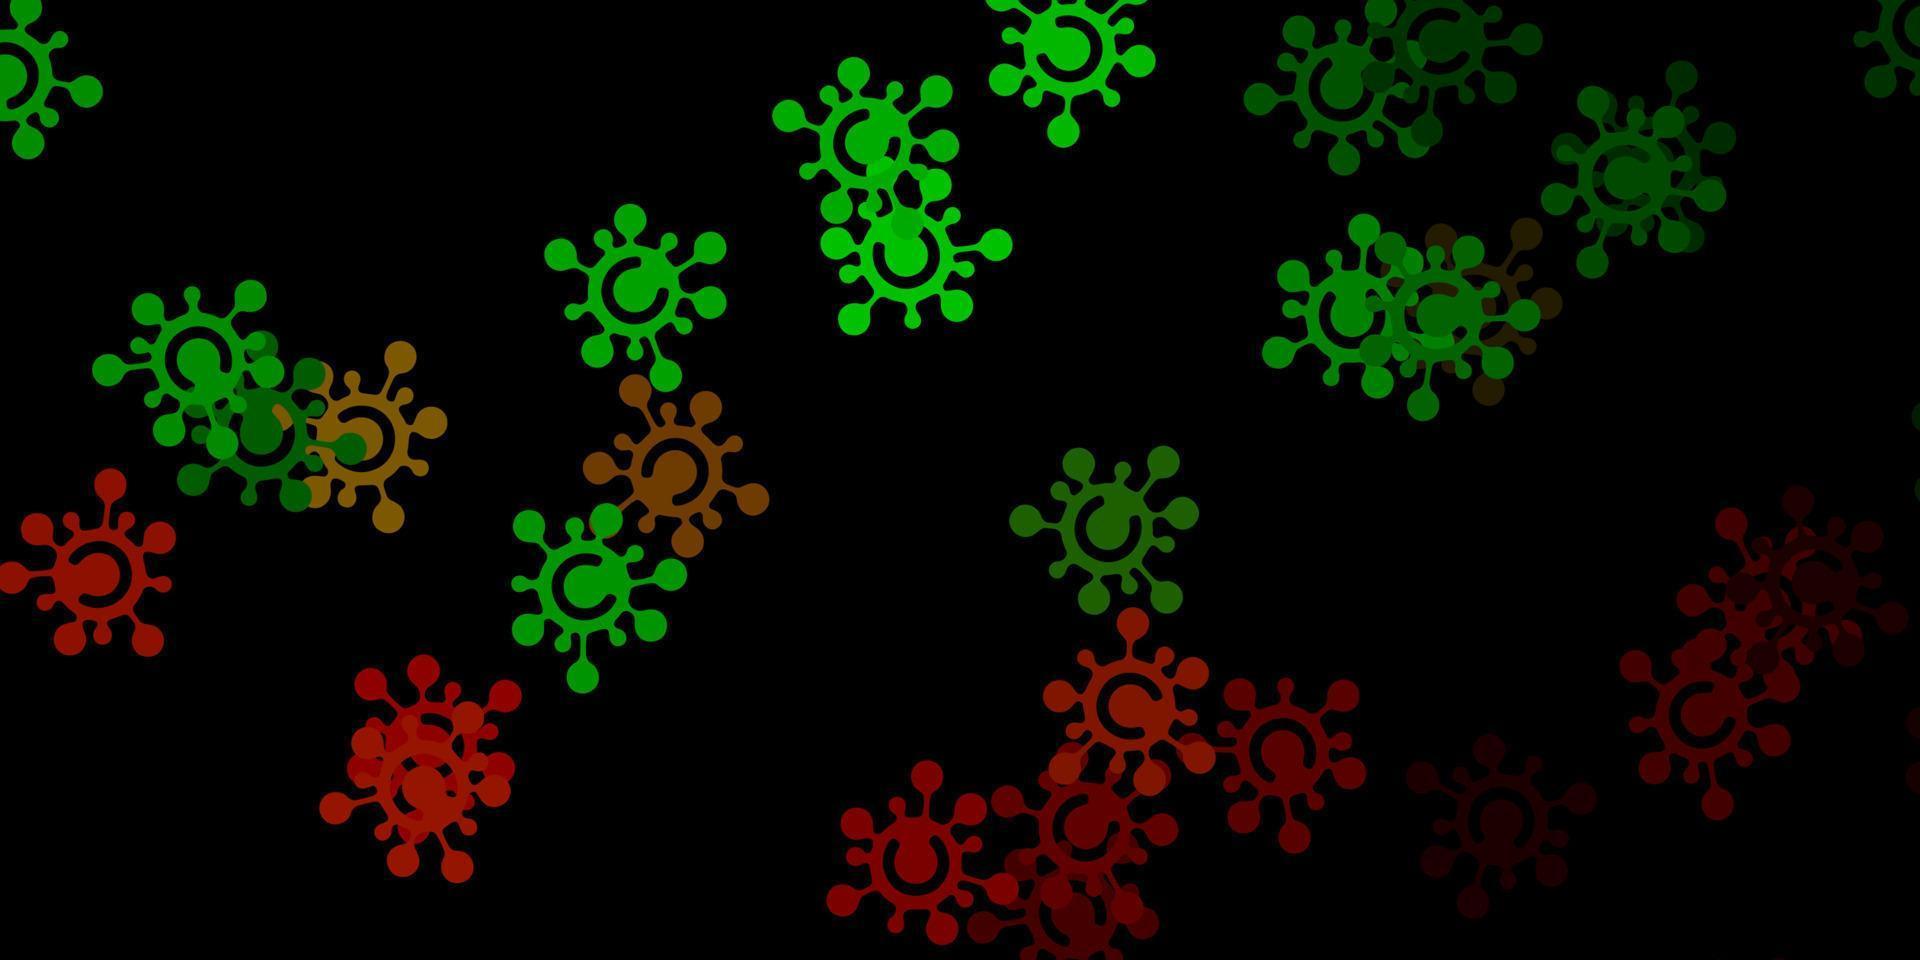 trama vettoriale verde scuro, rosso con simboli di malattia.